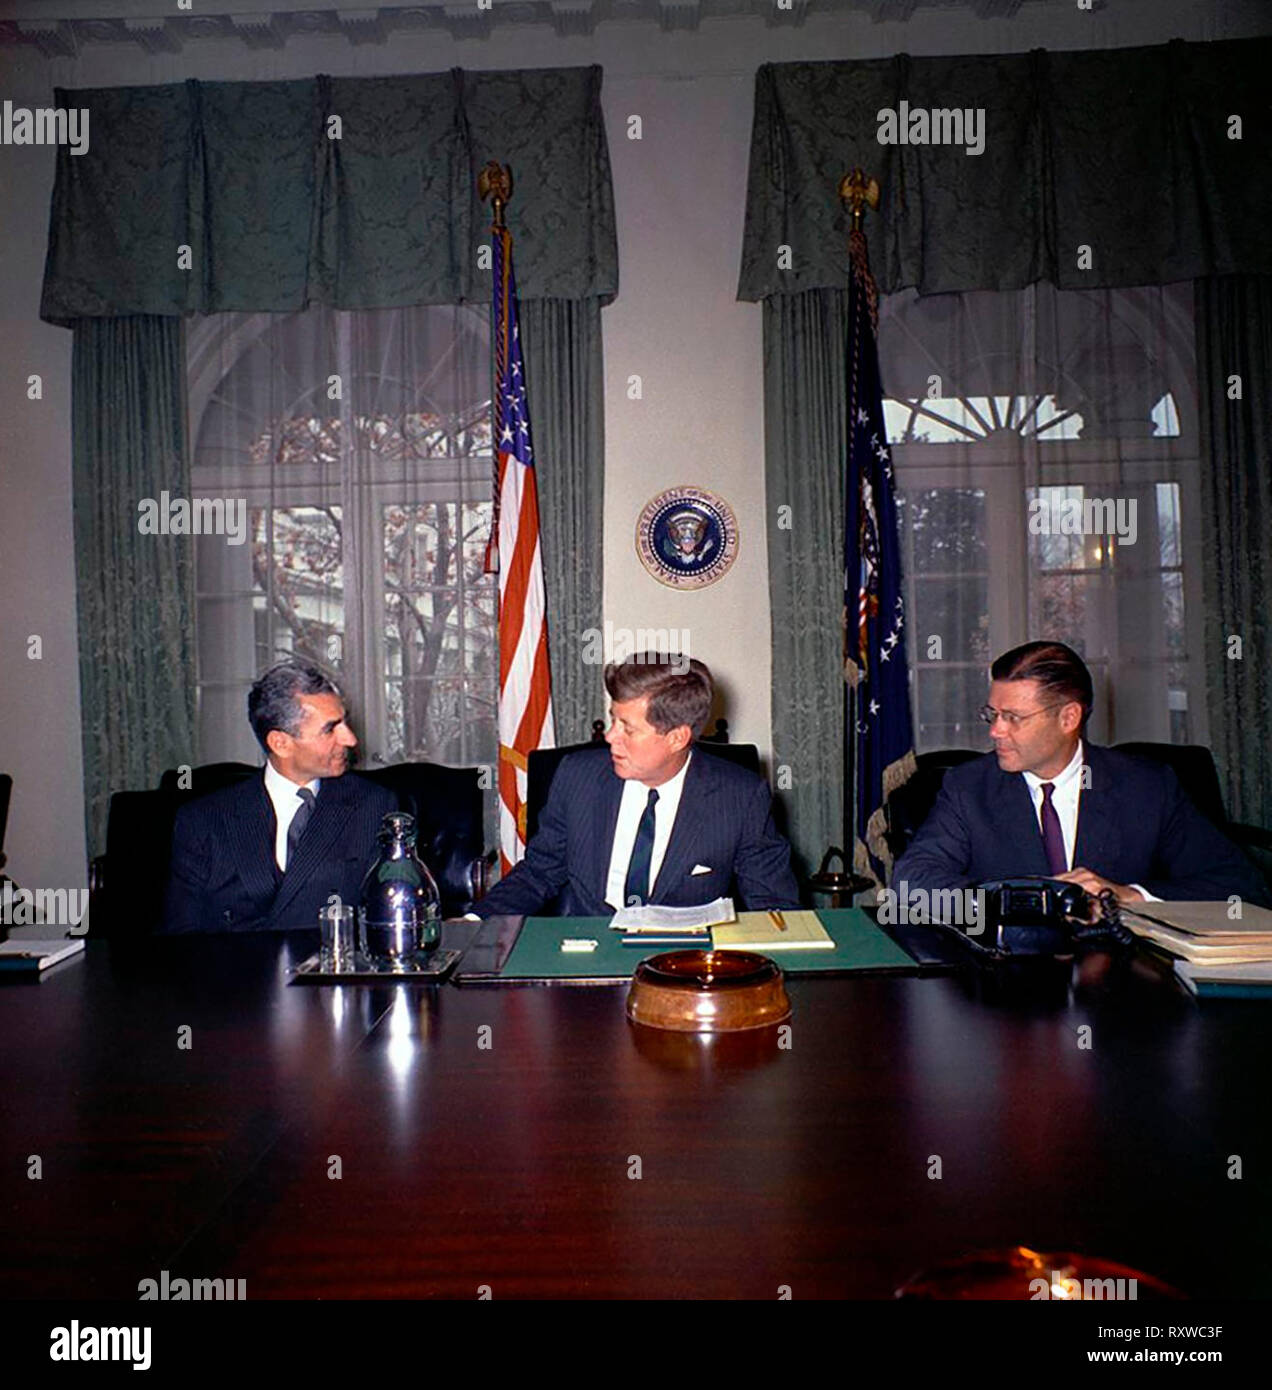 Präsident John F. Kennedy trifft sich mit Mohammad Reza Pahlavi, die shahanshah des Iran, im Schaltschrank des White House, Washington, D.C., April 1962 Stockfoto